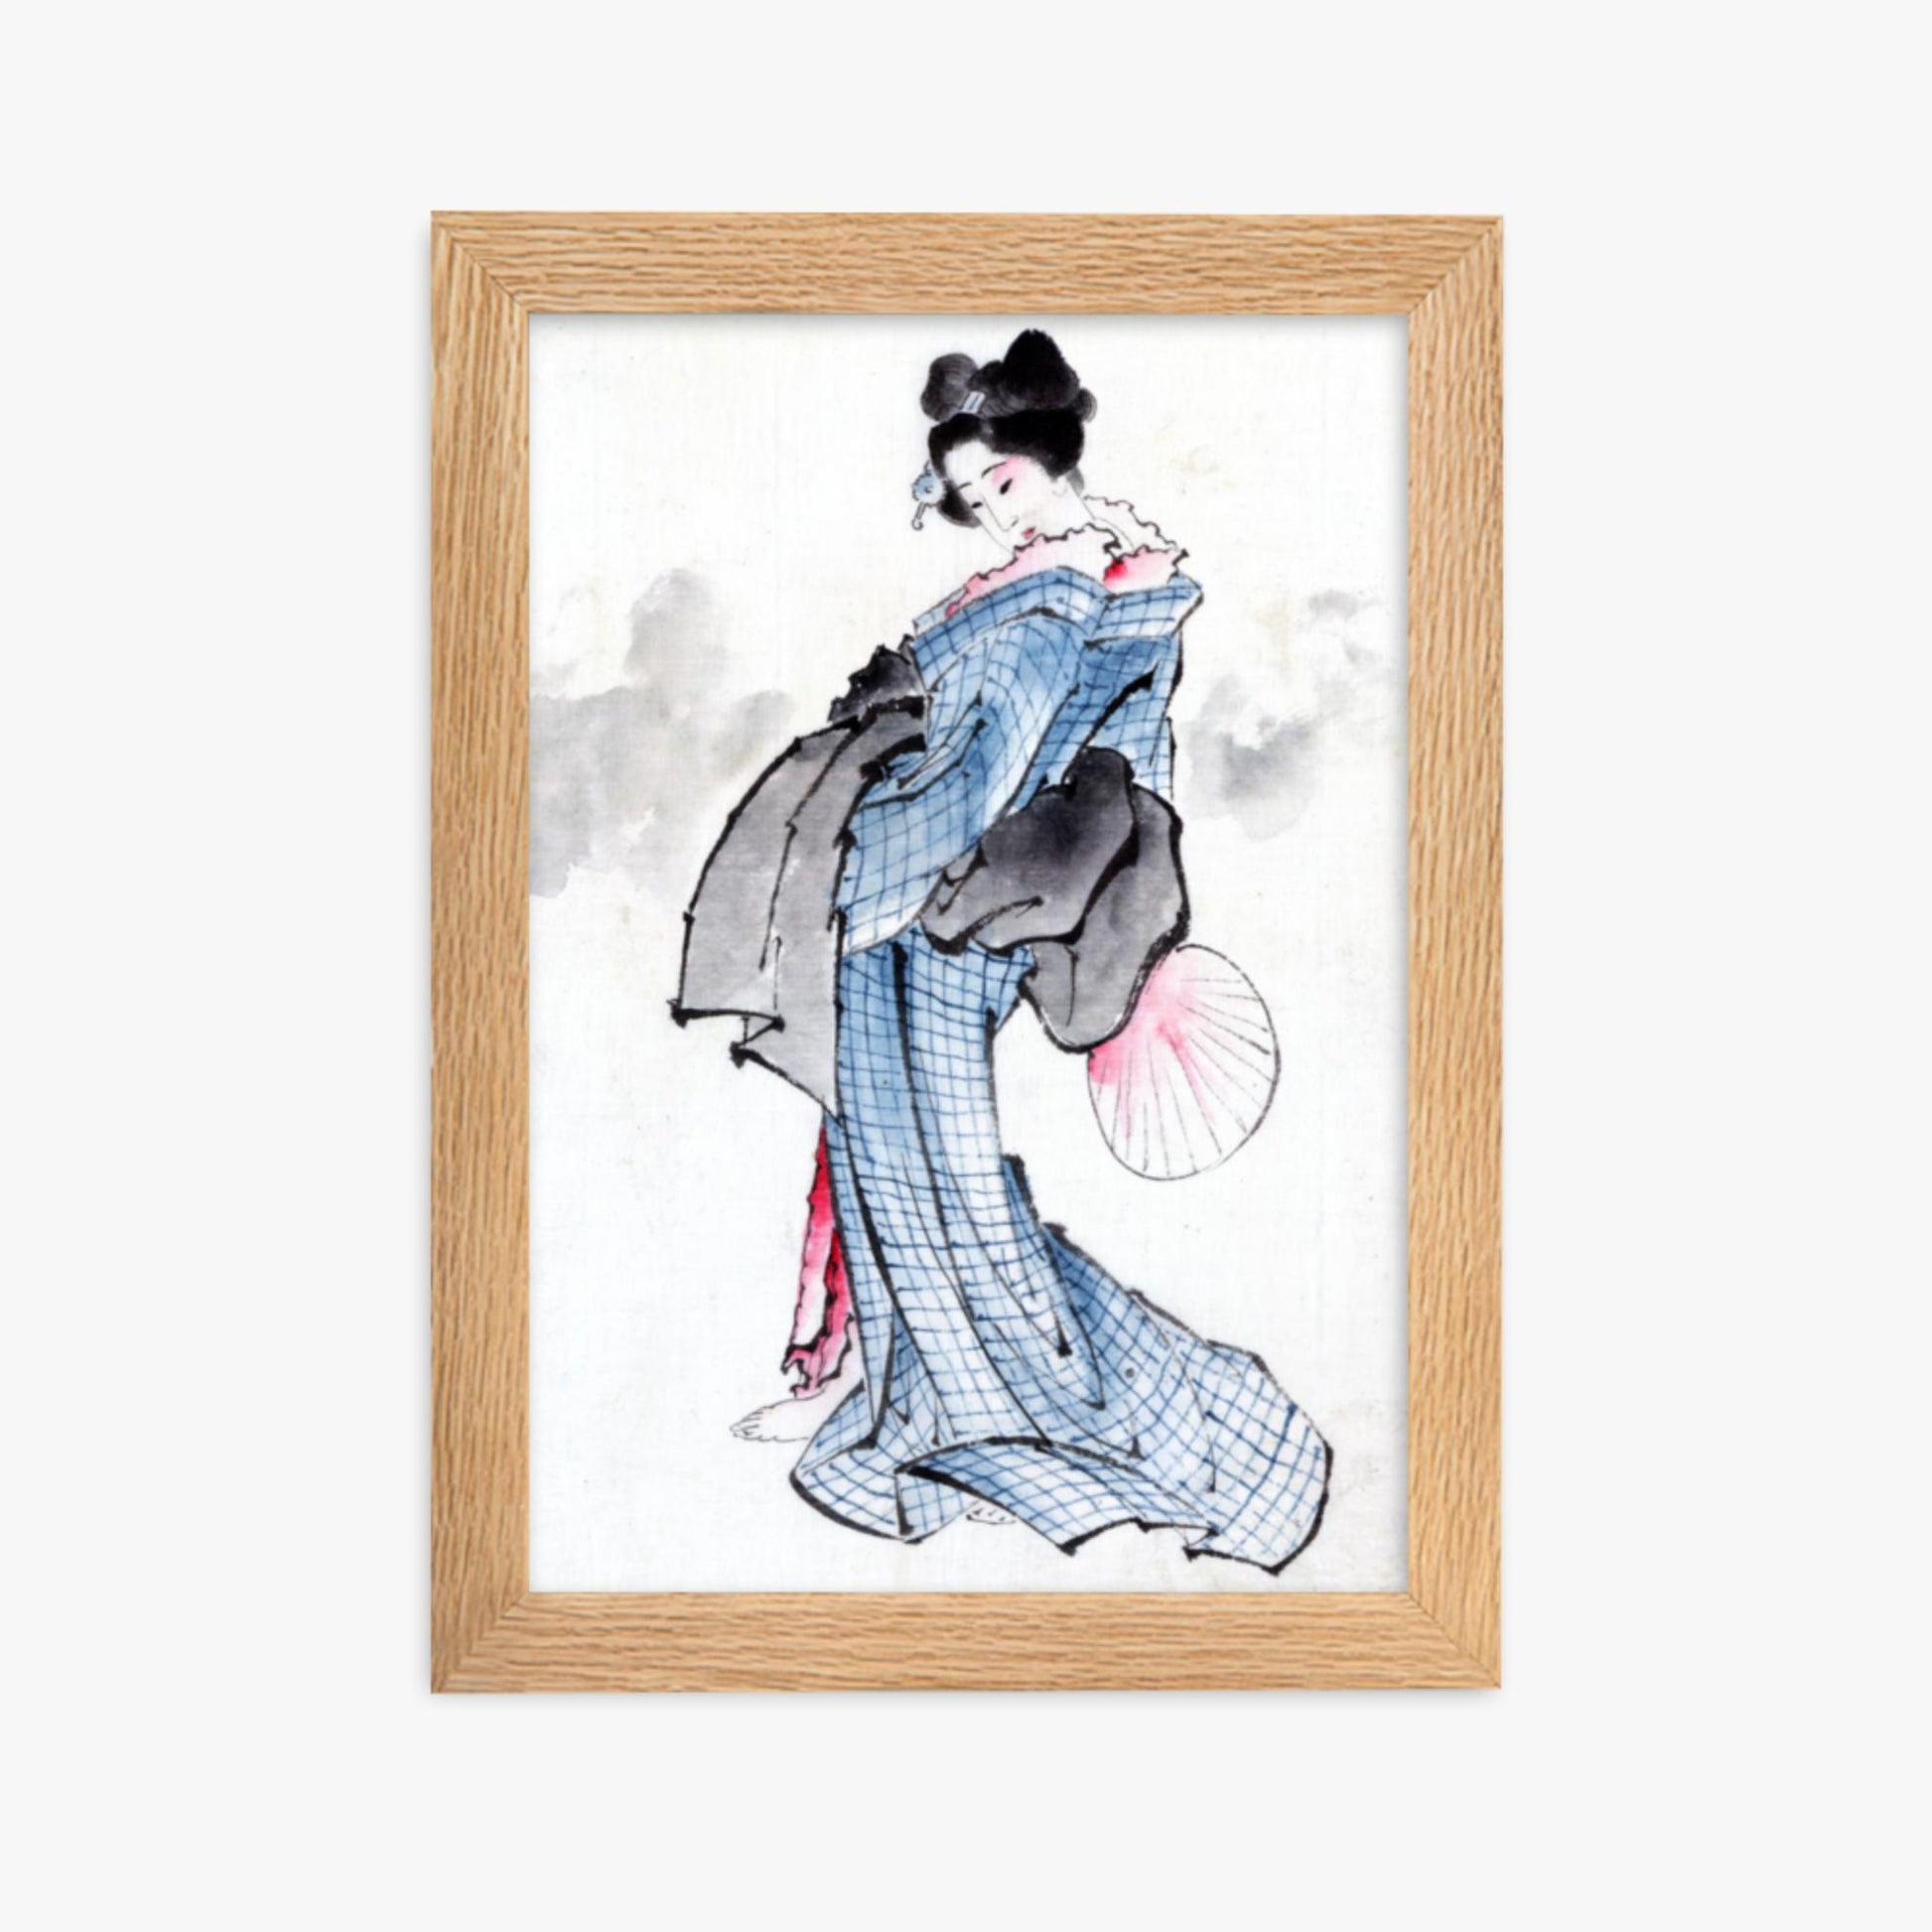 Katsushika Hokusai - Illustration of a Japanese Woman in Kimono 21x30 cm Poster With Oak Frame